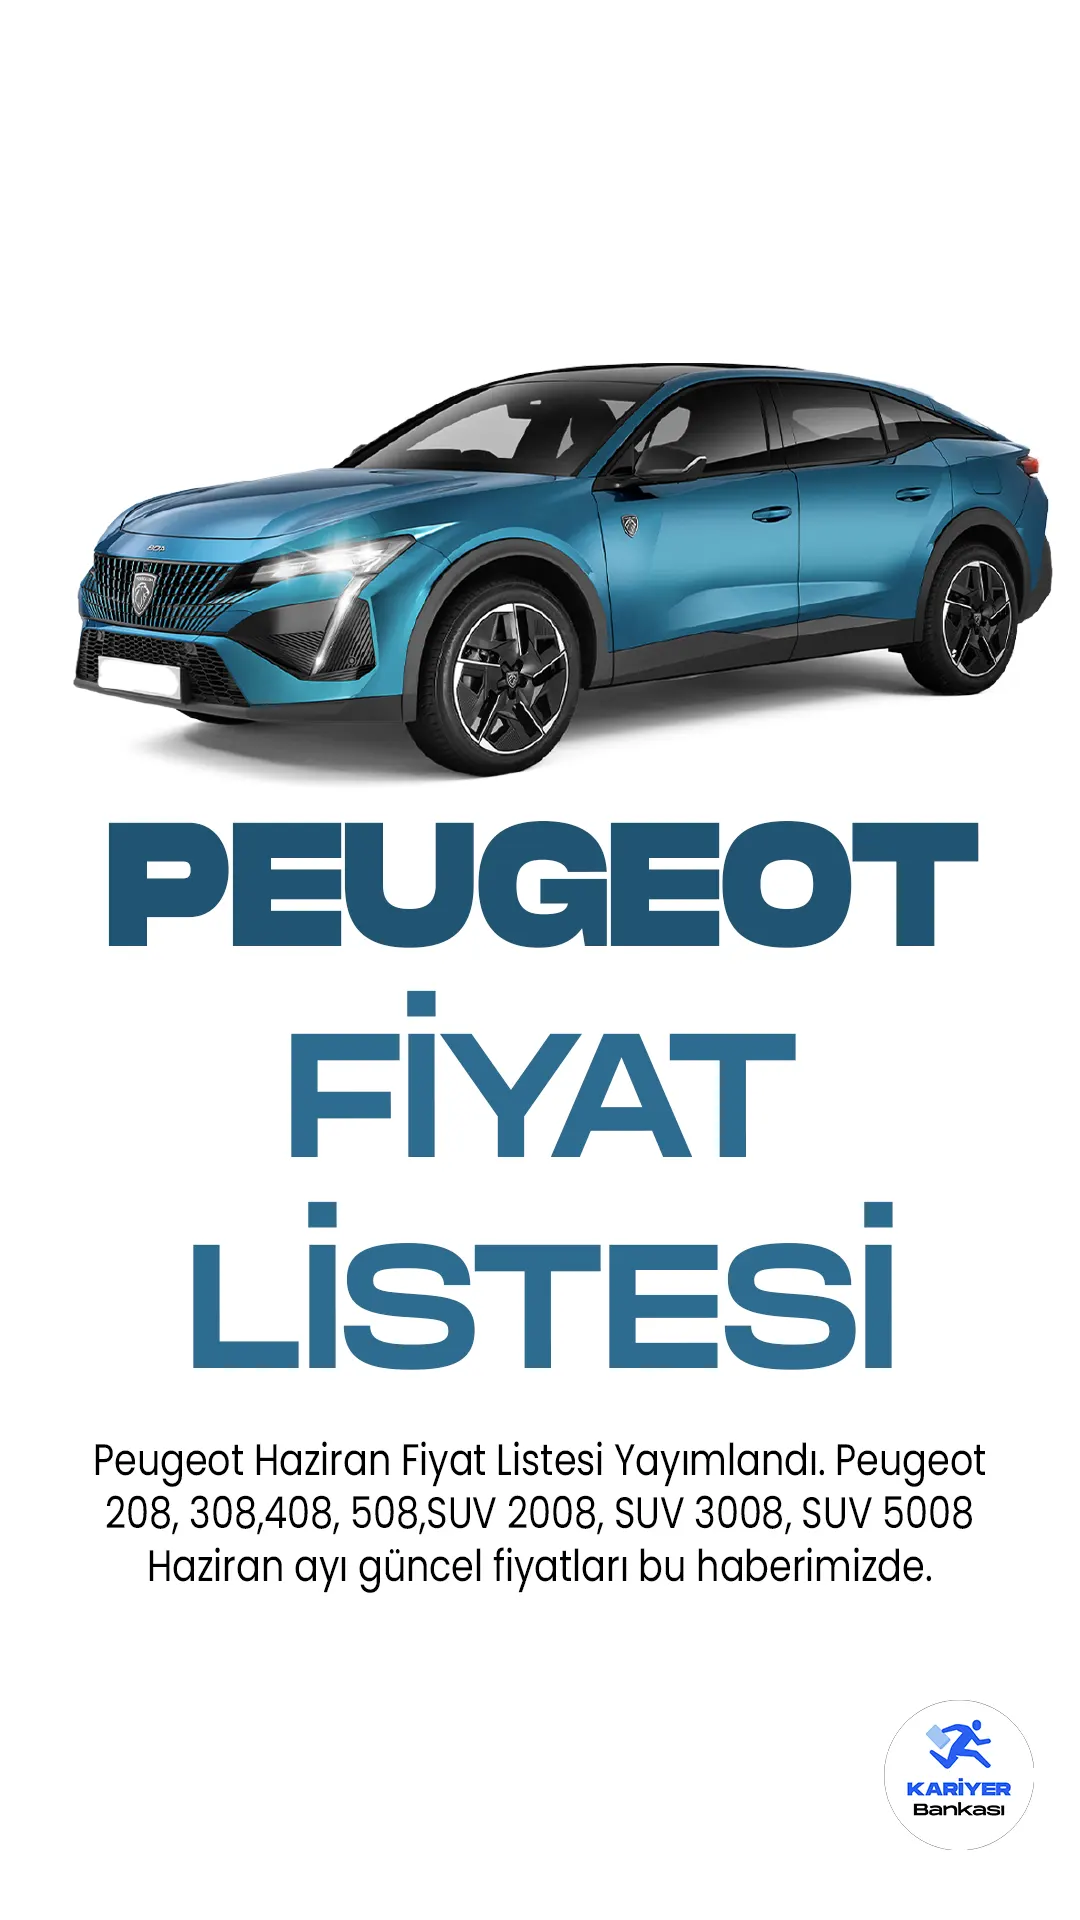 Peugeot Haziran 2023 Fiyat Listesi Yayımlandı. Ünlü araç markalarından biri olan Peugeot, her ay fiyat listelerini güncellemeye devam ediyor.Peugeot 208, 308,408, 508,SUV 2008, SUV 3008, SUV 5008 Haziran güncel fiyatları bu haberimizde.